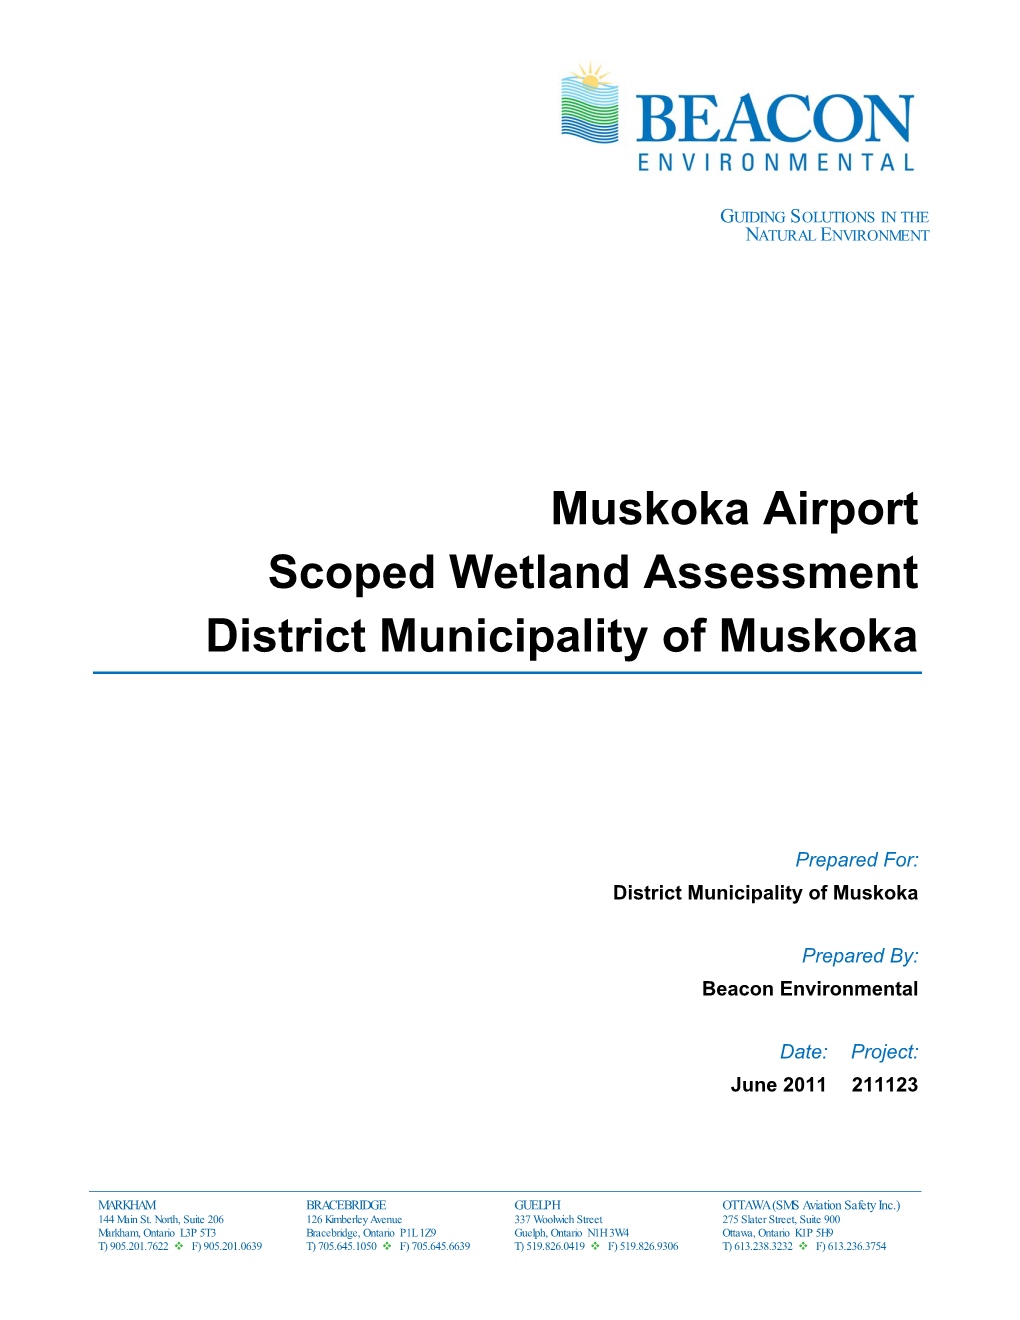 Muskoka Airport Scoped Wetland Assessment District Municipality of Muskoka